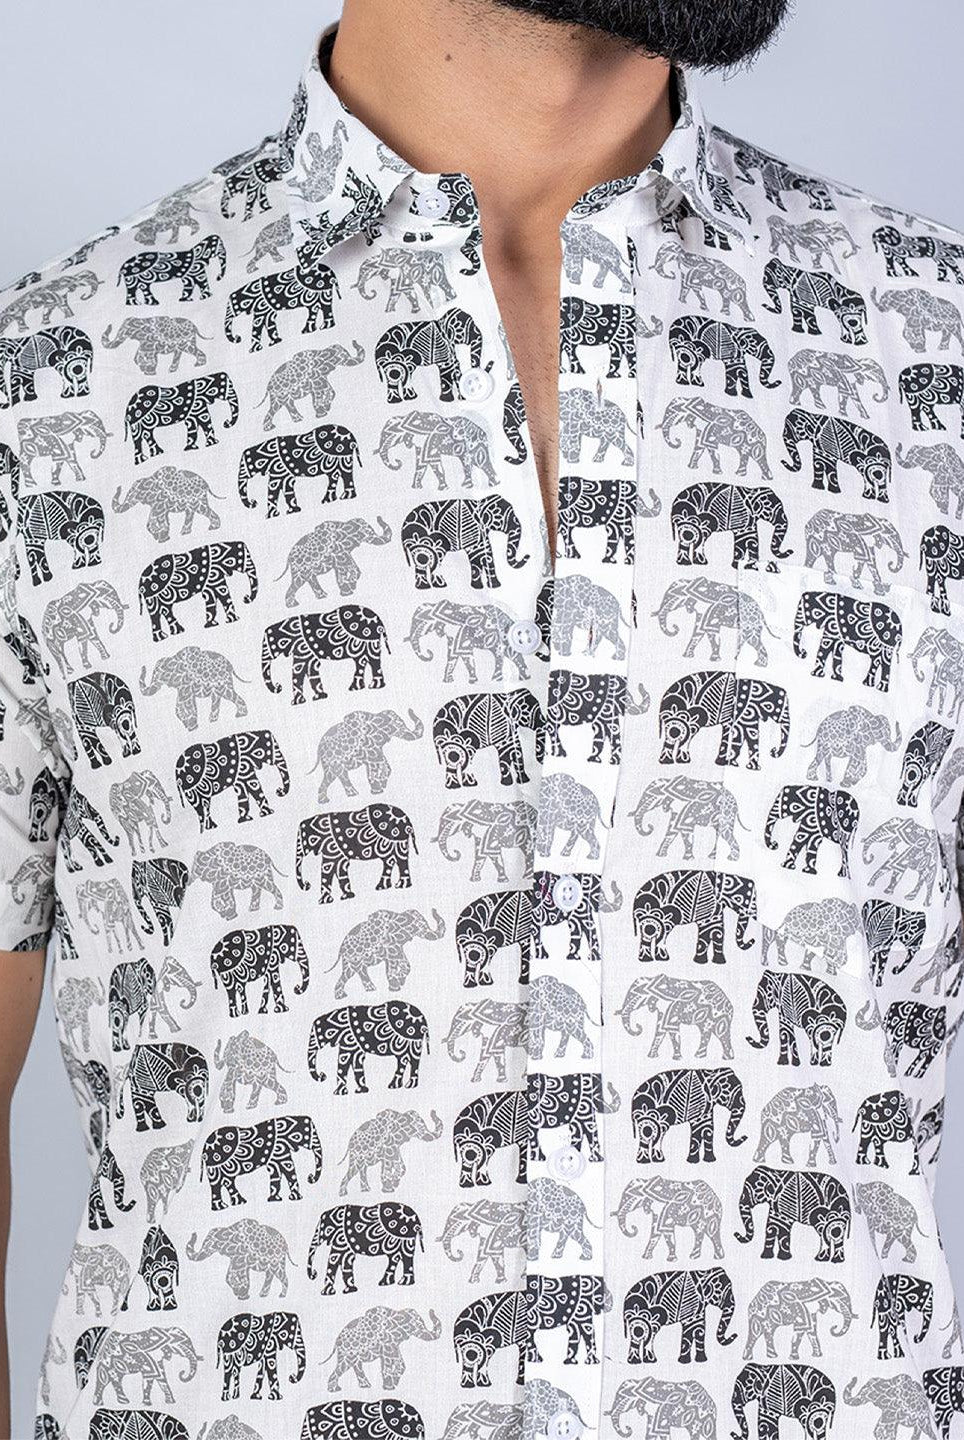 animal printed shirt